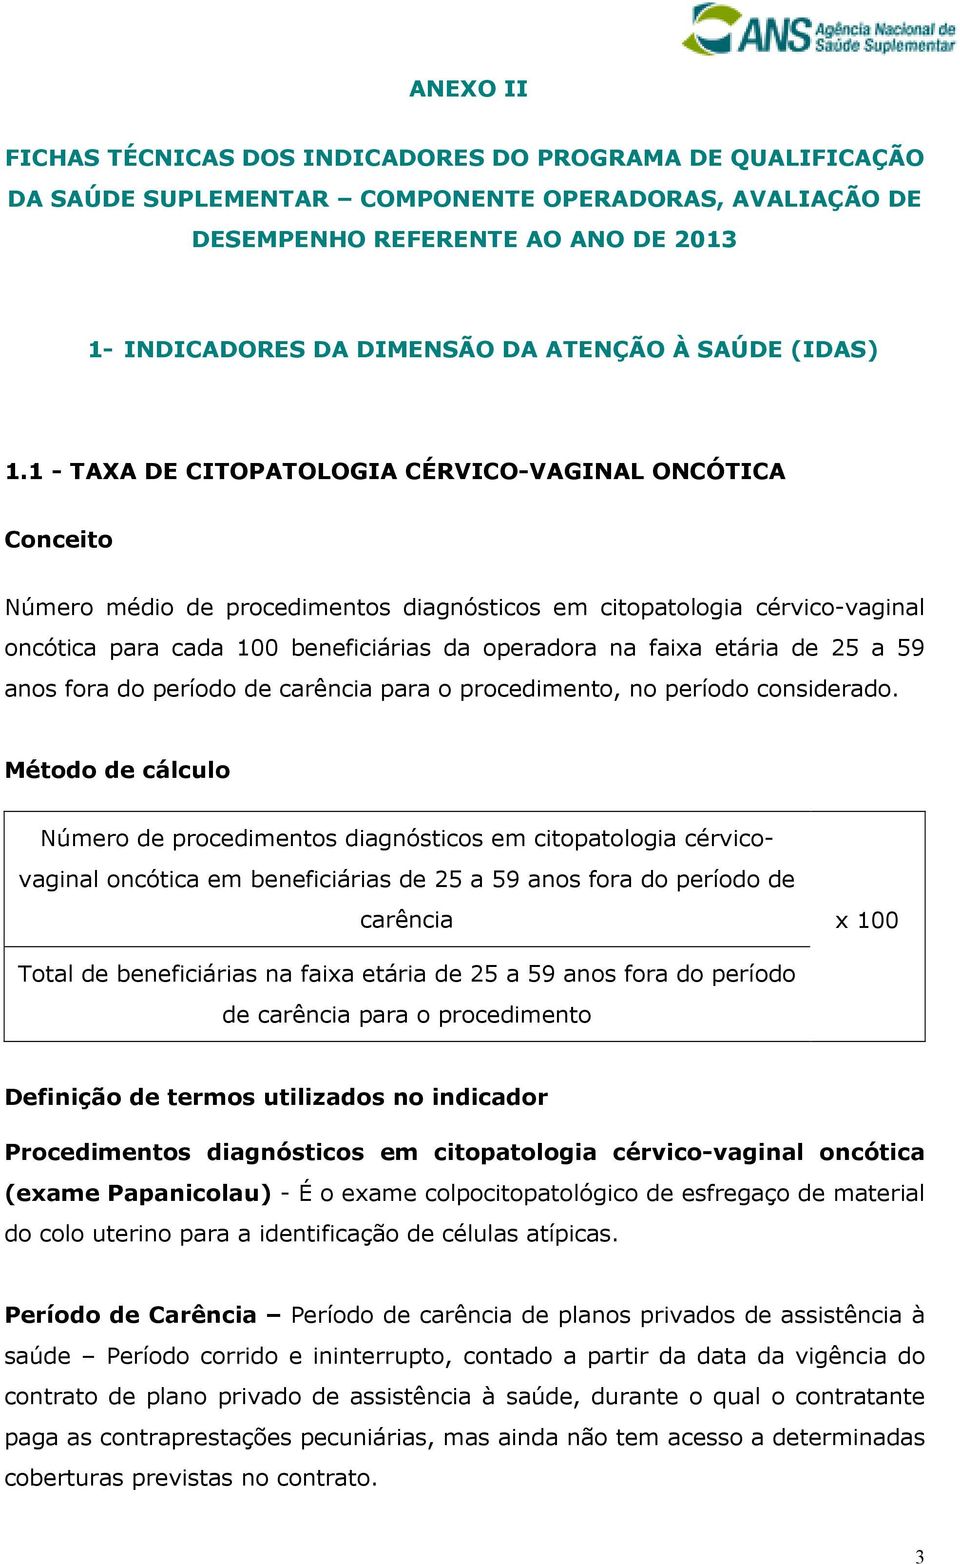 1 - TAXA DE CITOPATOLOGIA CÉRVICO-VAGINAL ONCÓTICA Conceito Número médio de procedimentos diagnósticos em citopatologia cérvico-vaginal oncótica para cada 100 beneficiárias da operadora na faixa